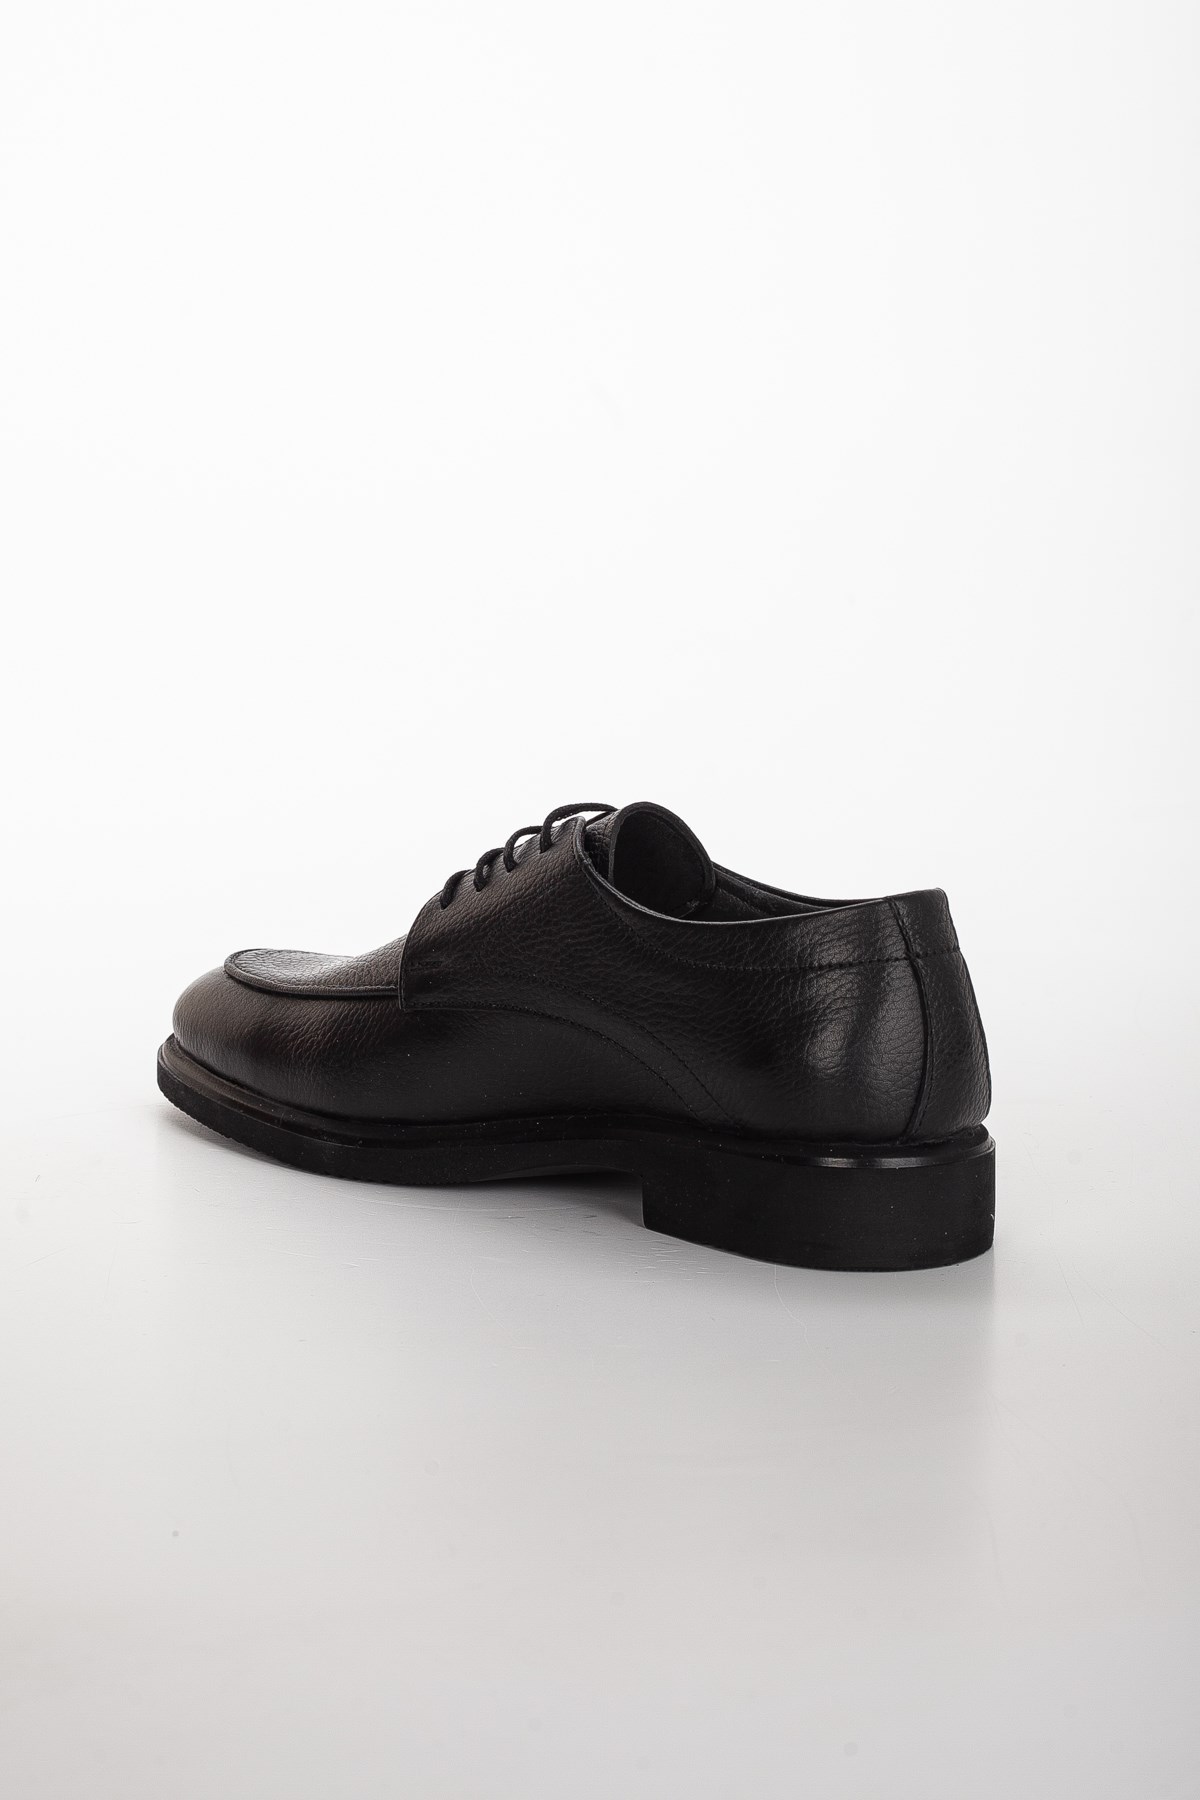 Hakiki Deri maskeletli Bağcıklı Siyah Erkek Klasik Ayakkabı